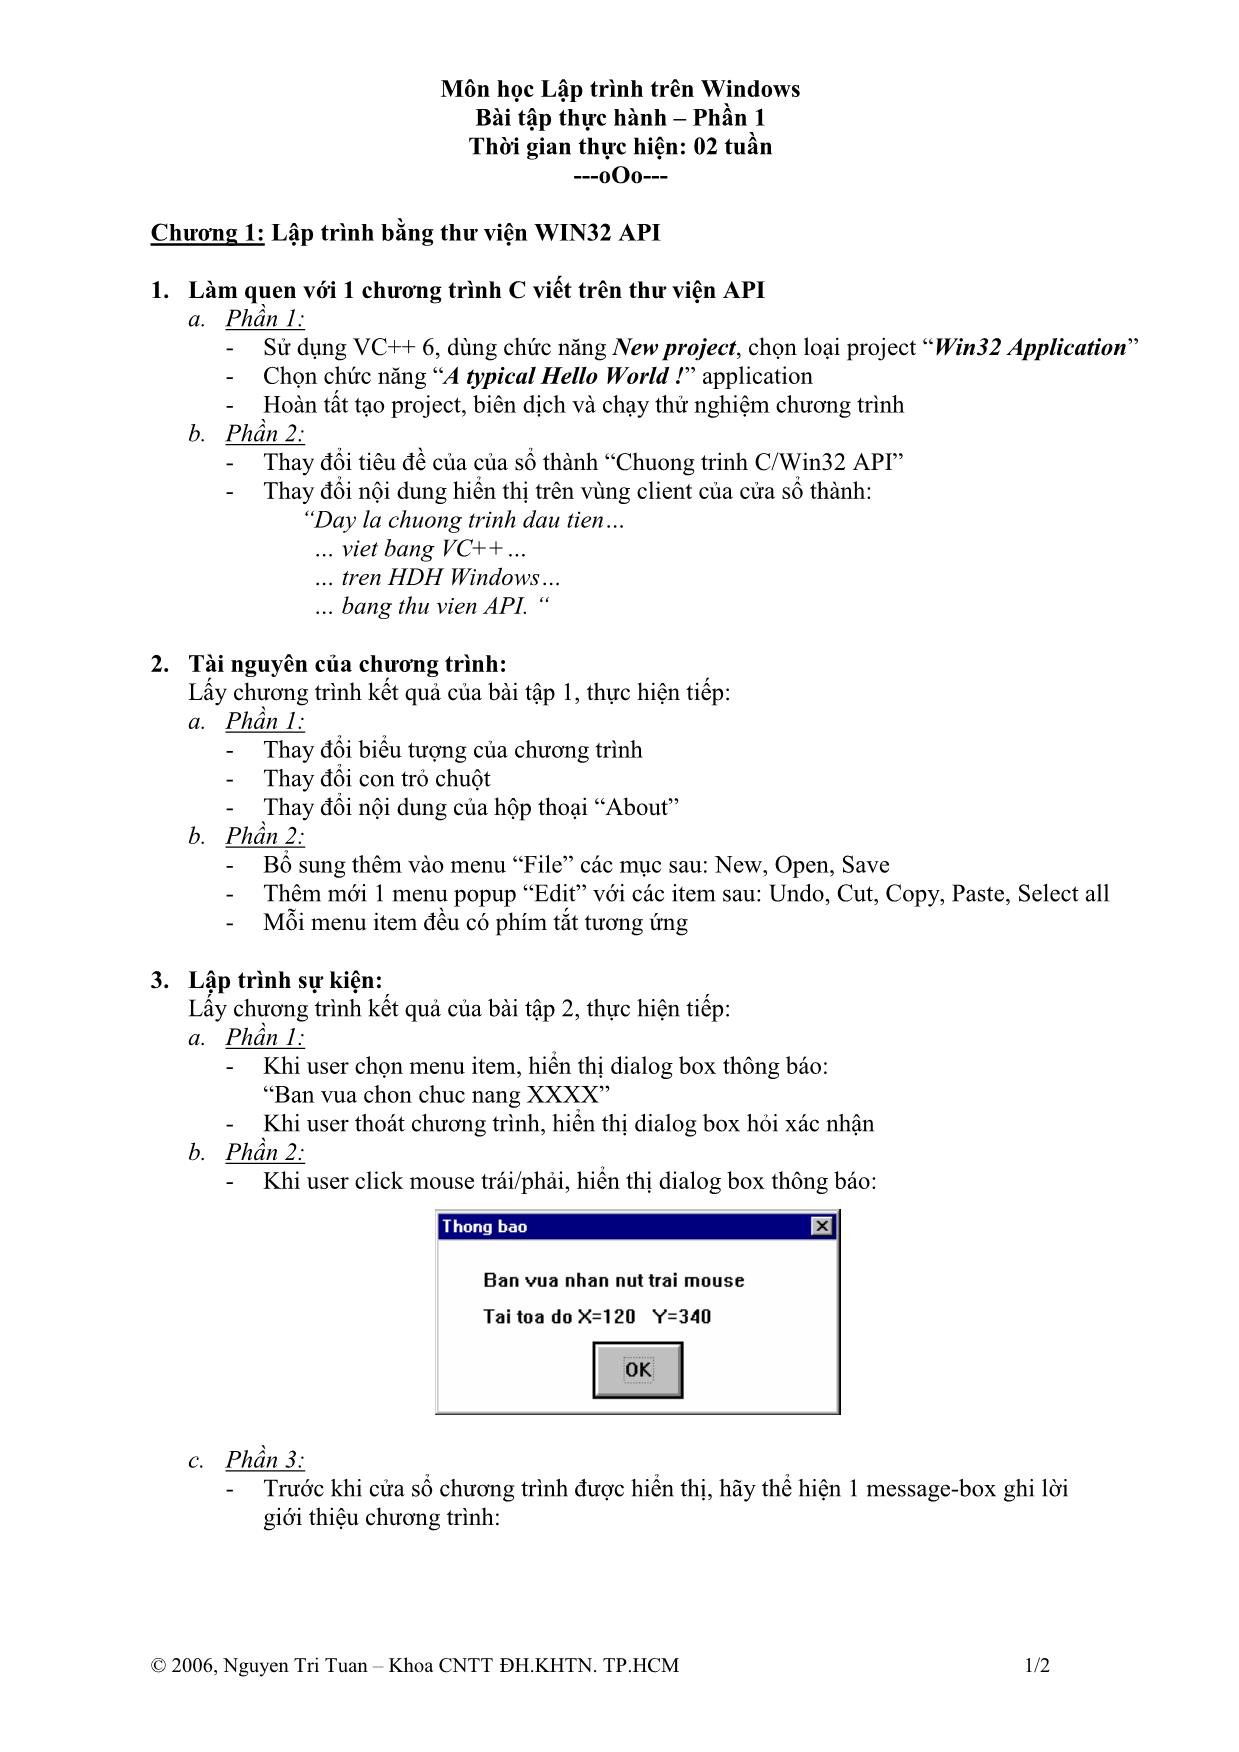 Bài tập thực hành môn Lập trình trên Windows trang 1